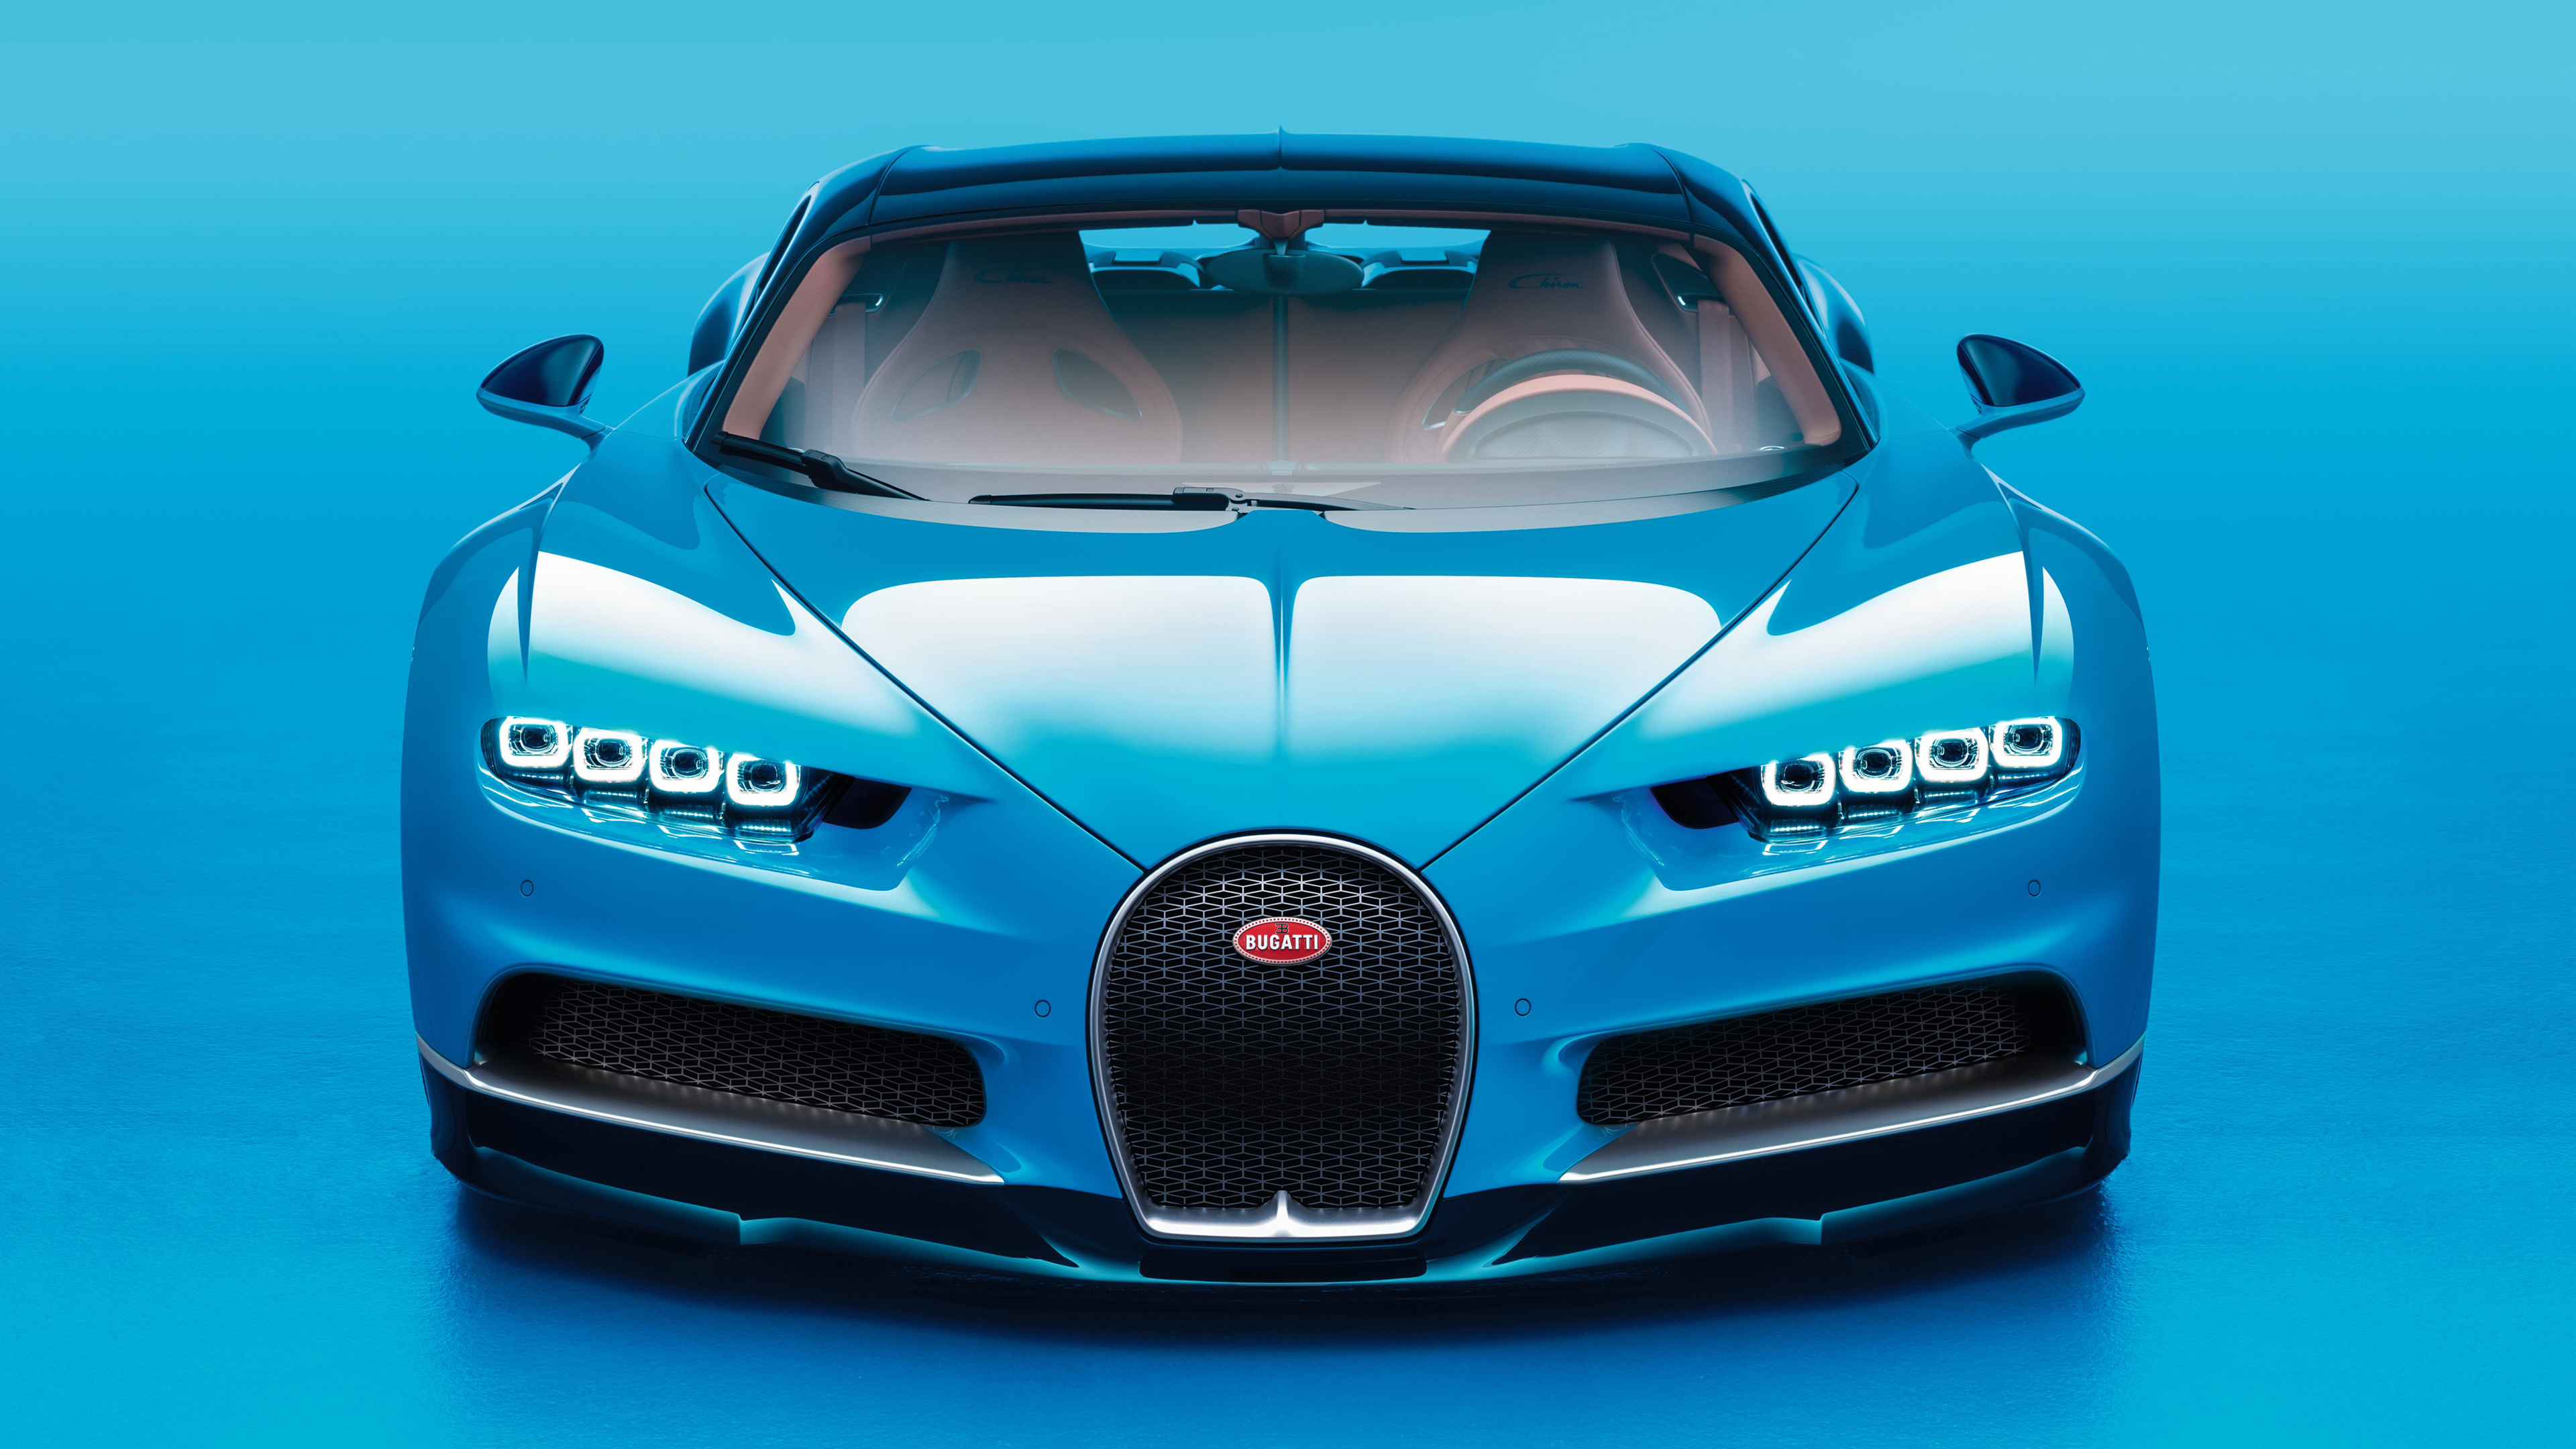 2017 Bugatti Chiron Geneva Autoshow Wallpaper | HD Car ...